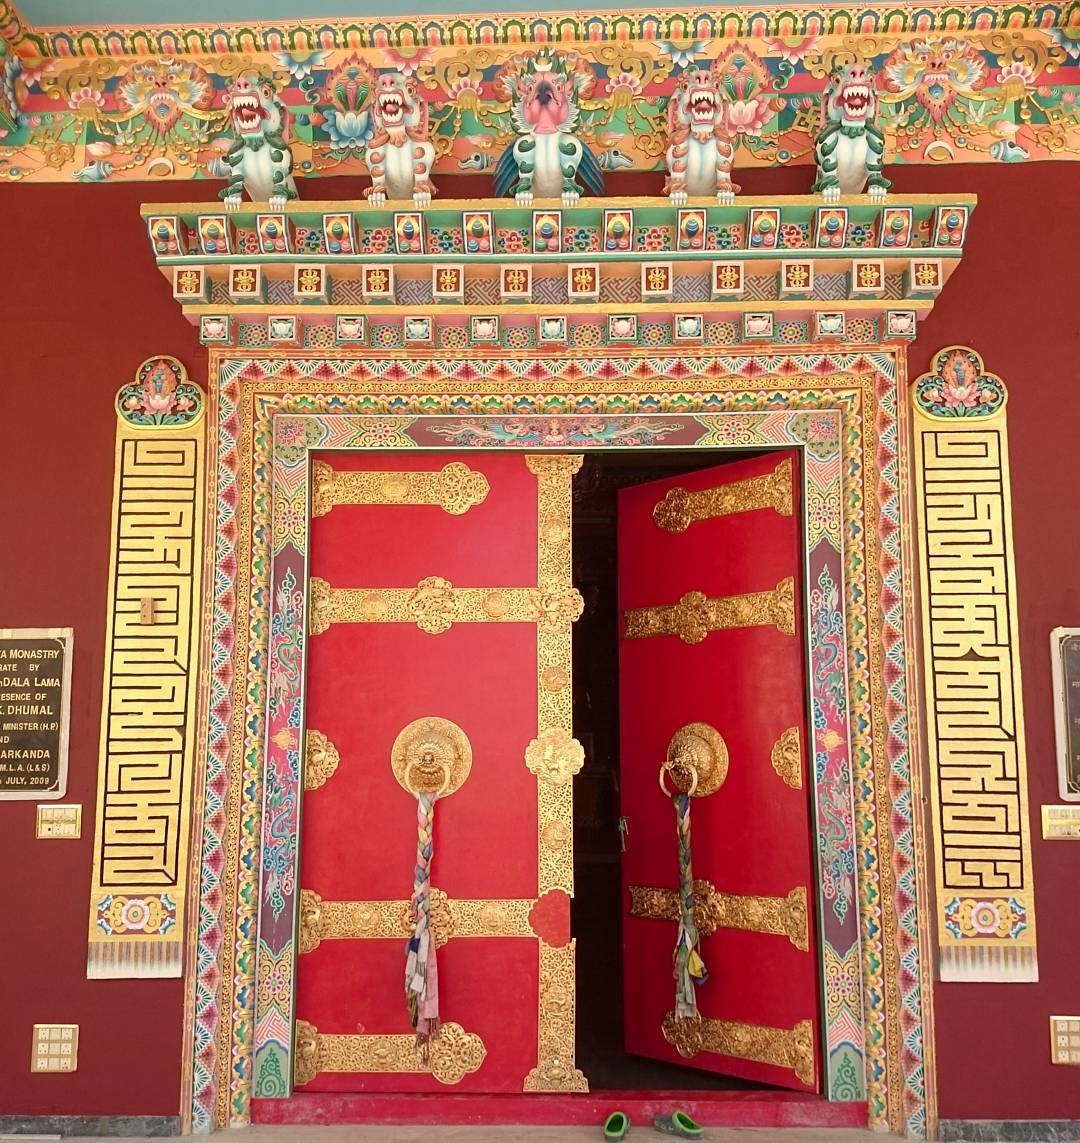 Exquisitely painted and decorated #monastery door in #Kaza, #Spiti 
#himachal #India #lpmi #doorsoftheworld #doorsofinstagram #bbctravel #lovetheworld